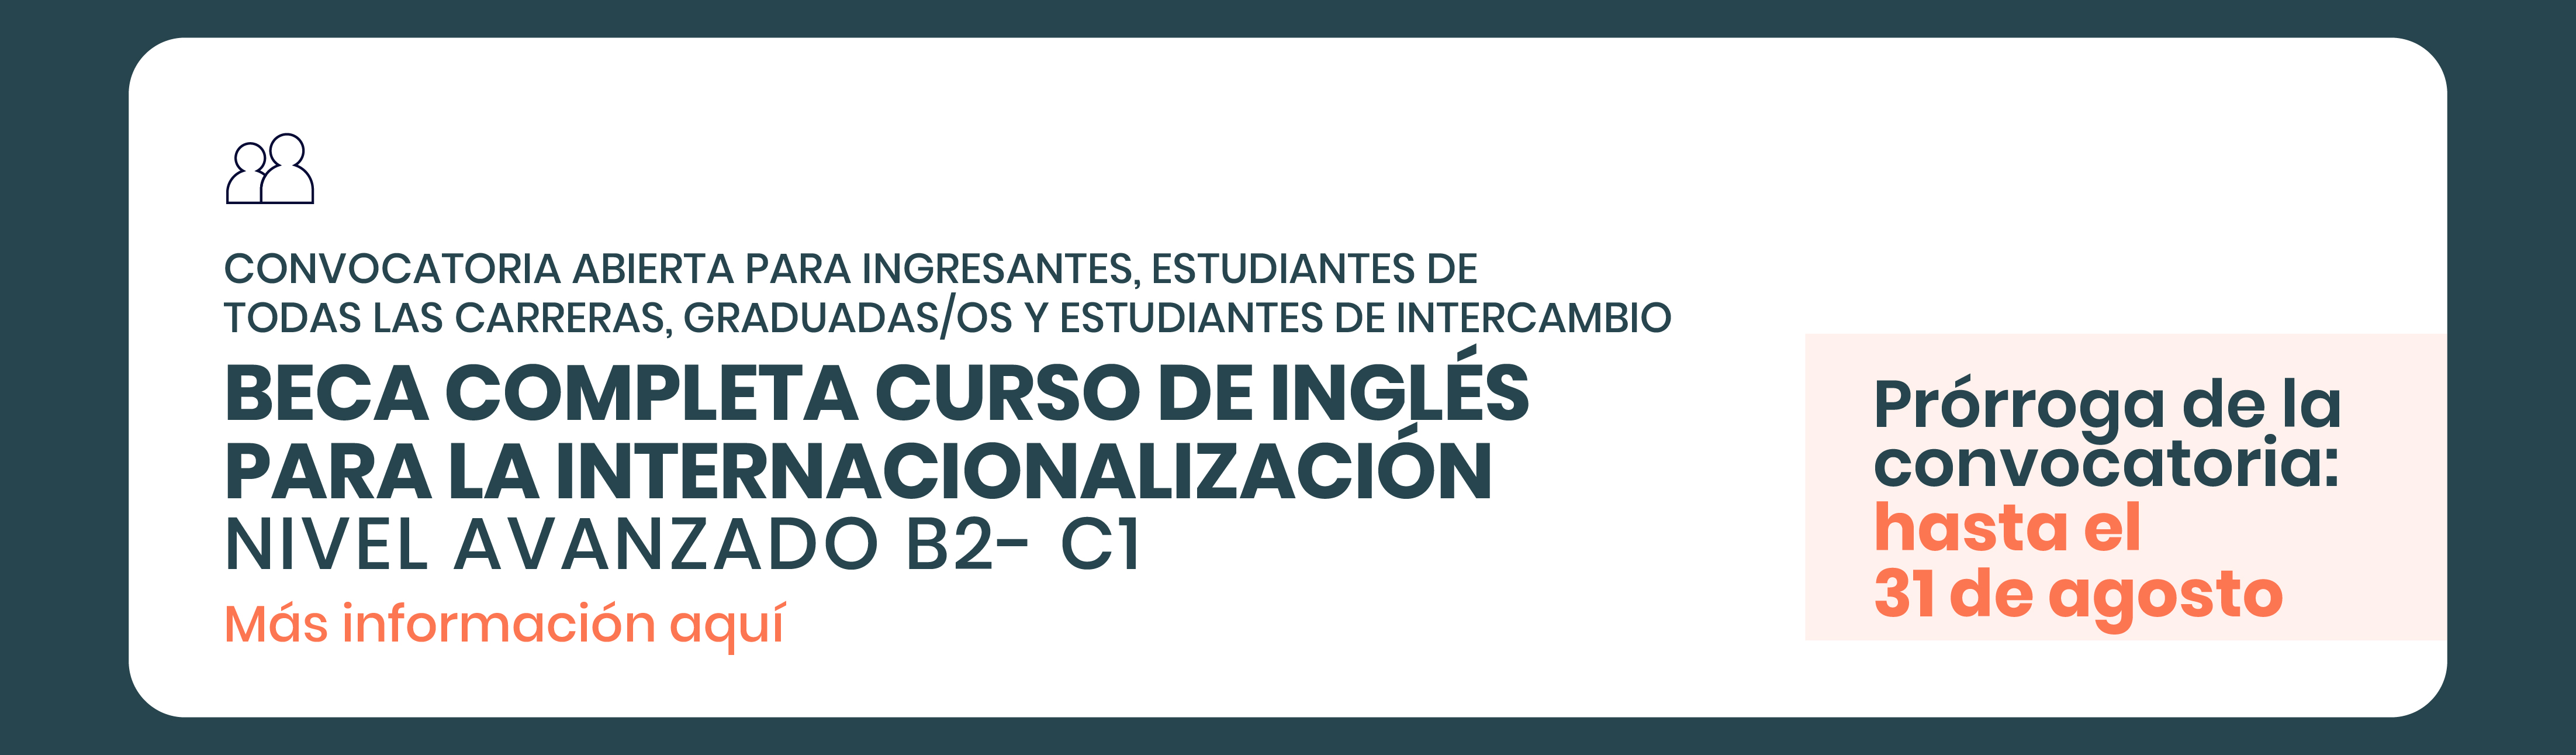 Curso de Inglés para la internacionalización UNPAZ 2021